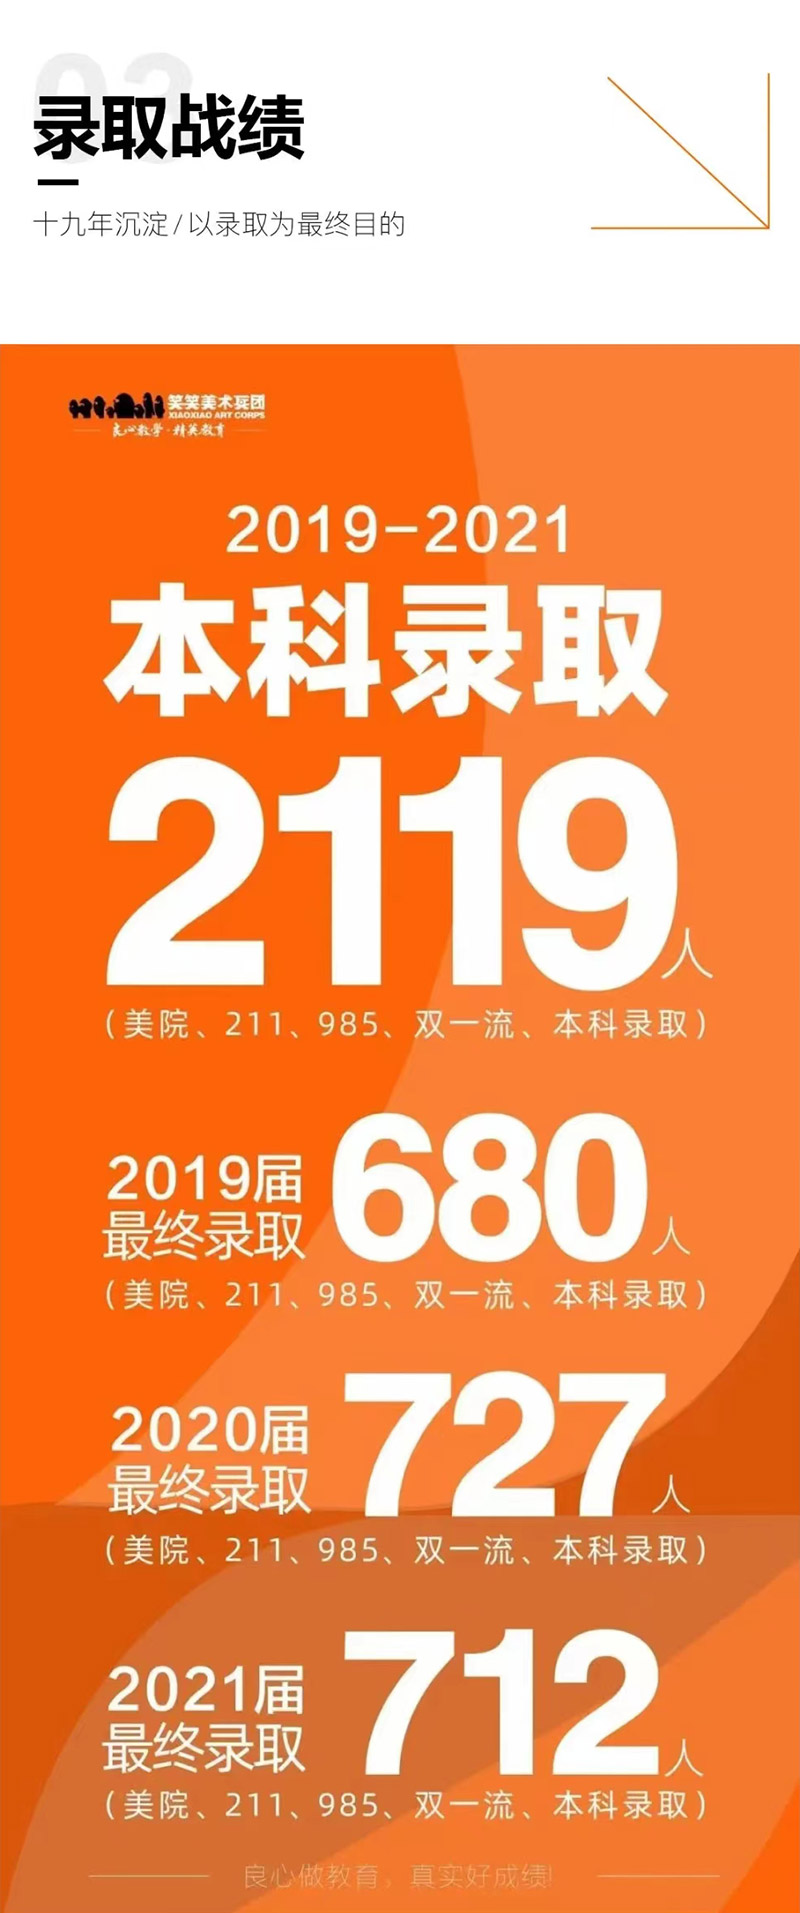 郑州笑笑画室2019-2021年本科录取人数